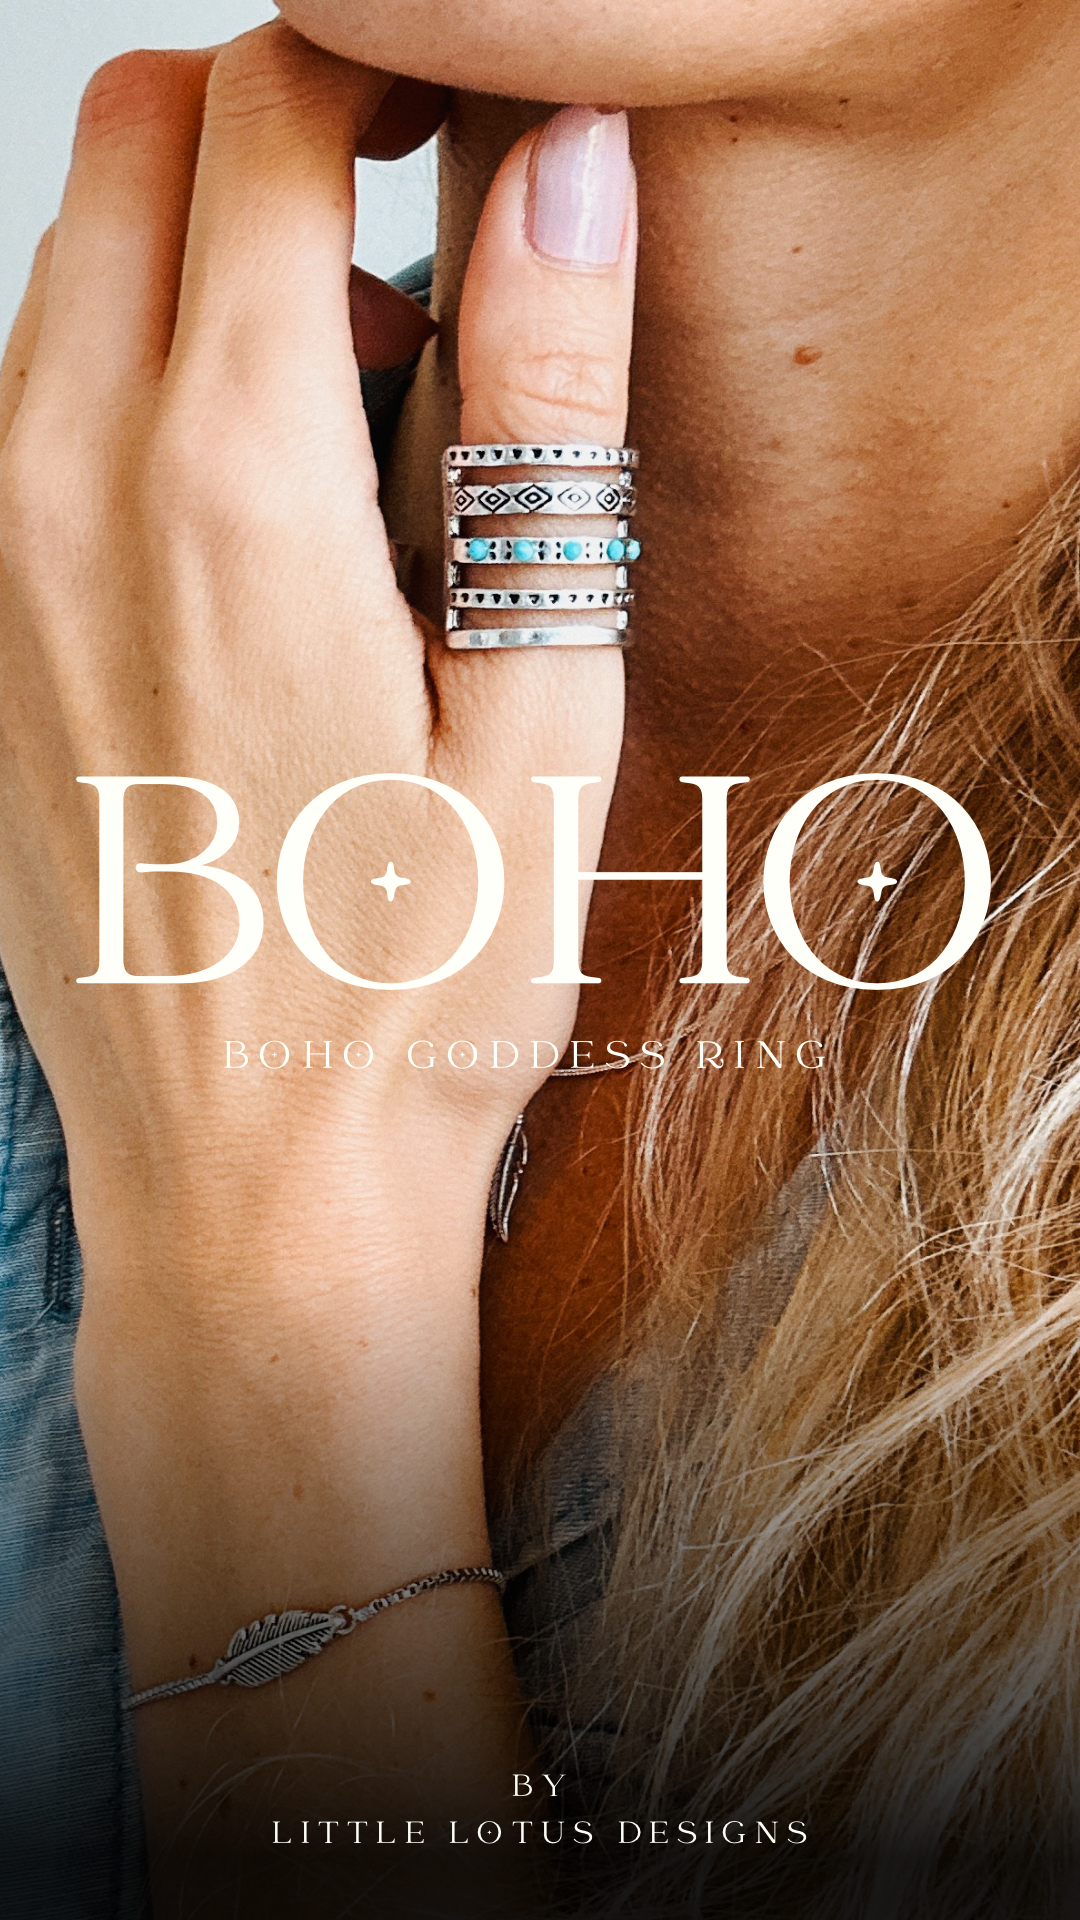 The Boho Goddess Ring